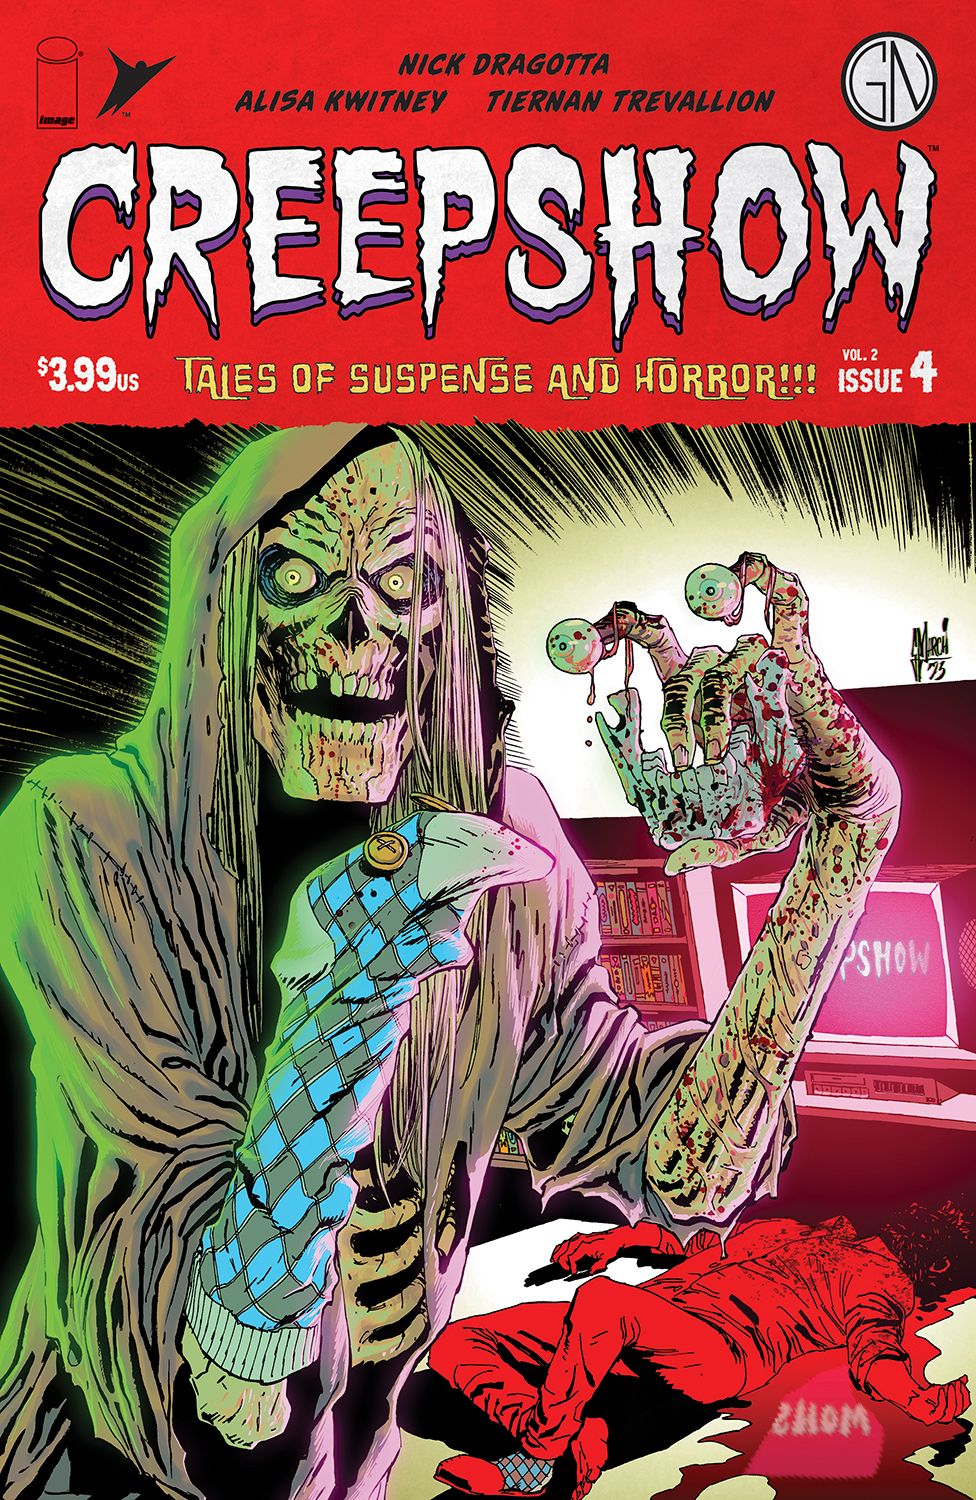 Creepshow Vol. 2 #4 Comic